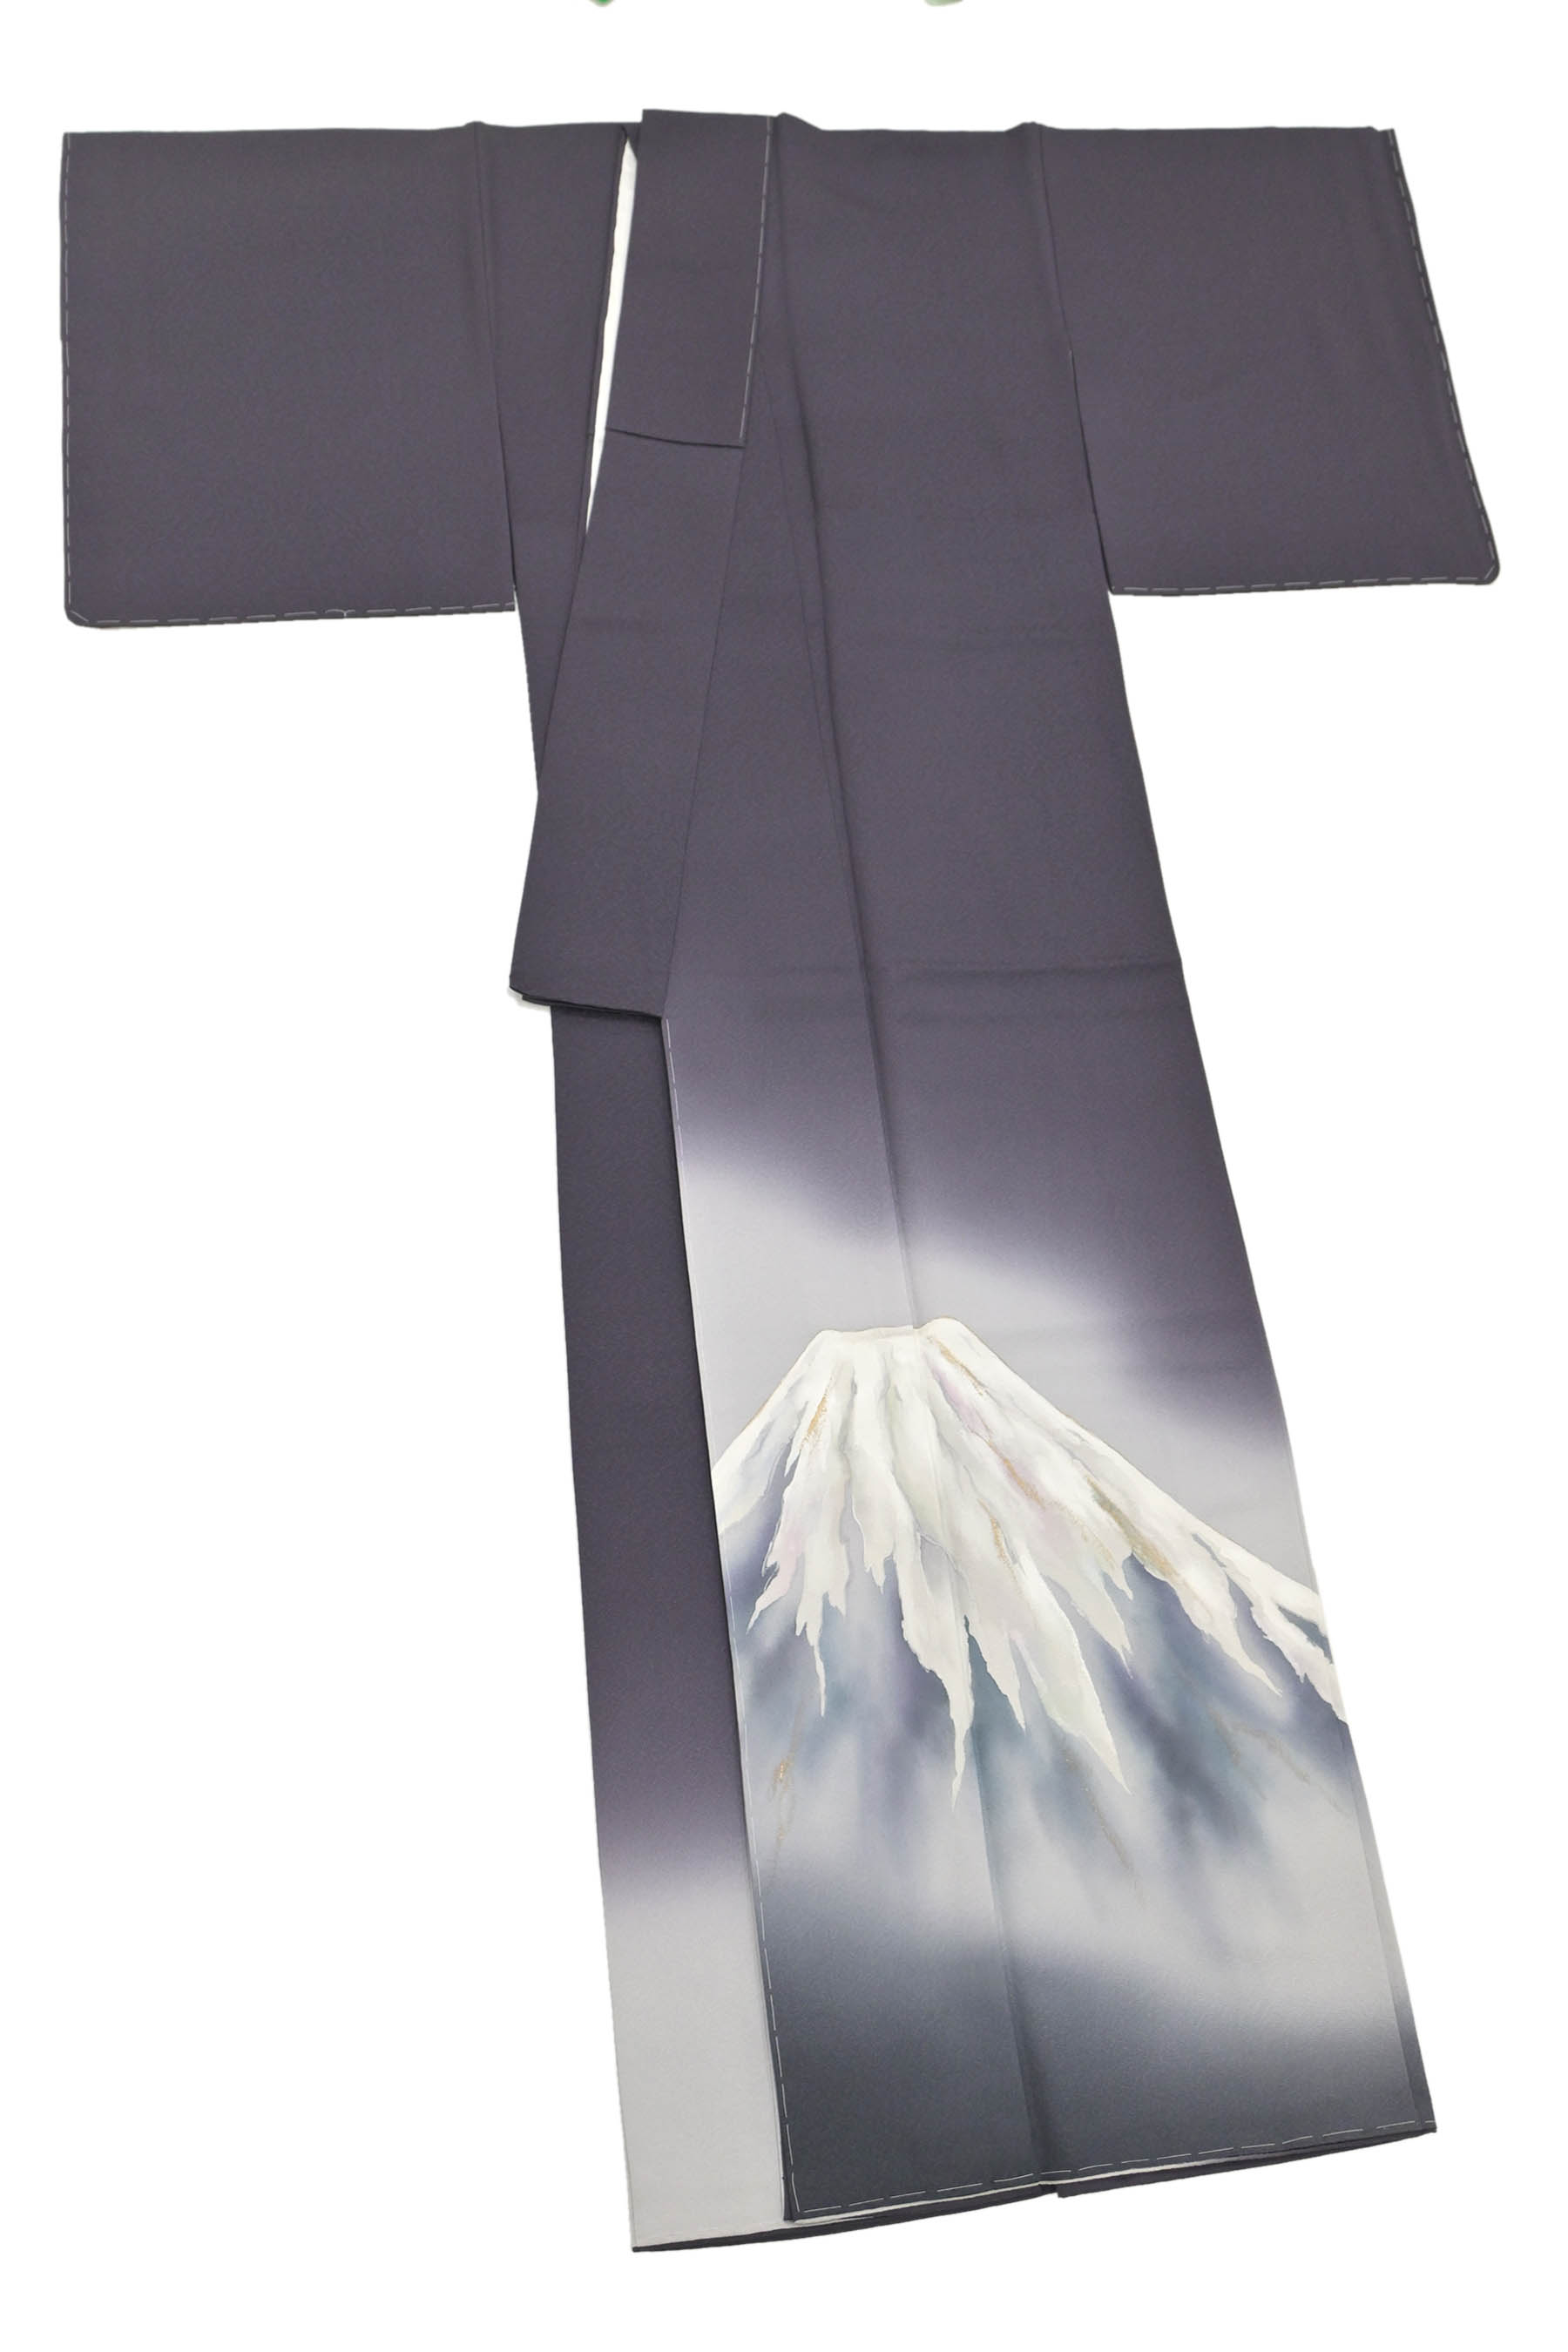 日本製即納草野一騎氏作 訪問着用 西陣織袋帯 正絹 地割れ模様 小縞 F3317 着物・浴衣